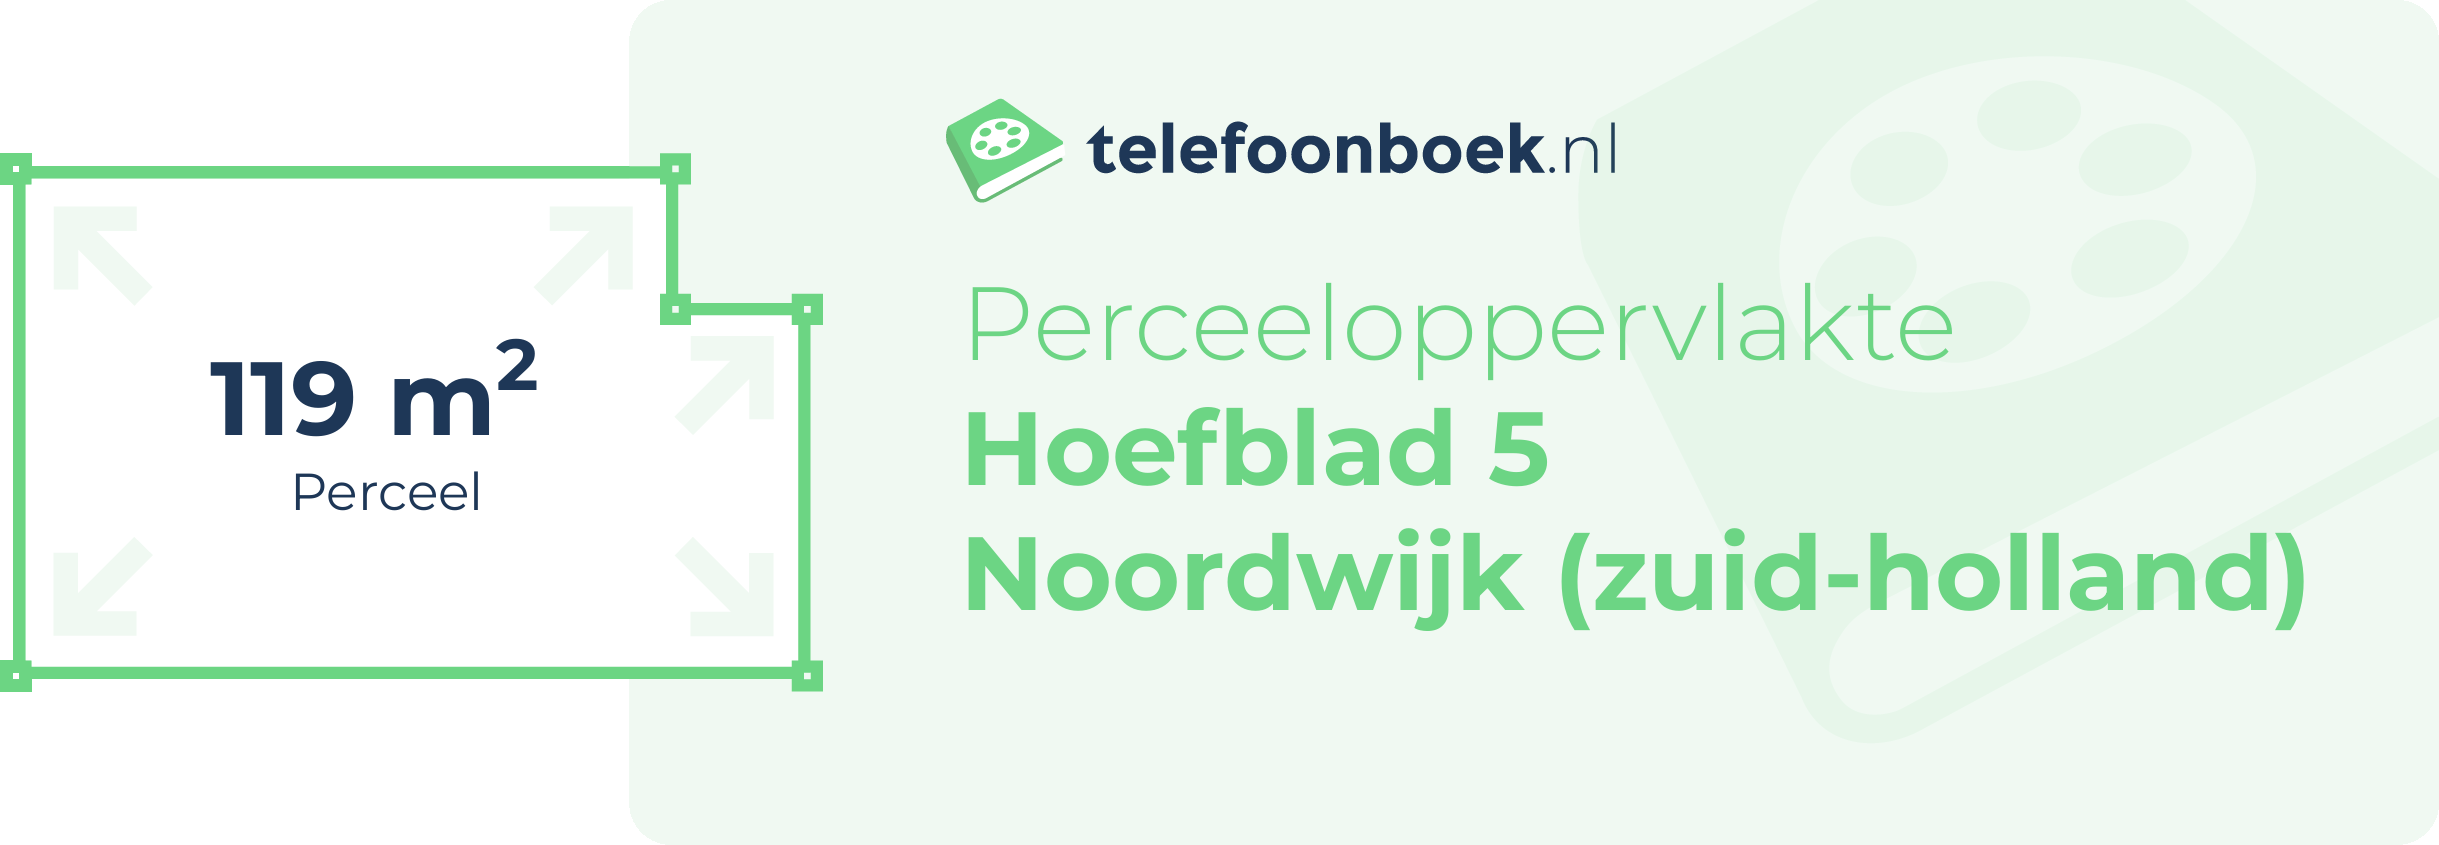 Perceeloppervlakte Hoefblad 5 Noordwijk (Zuid-Holland)